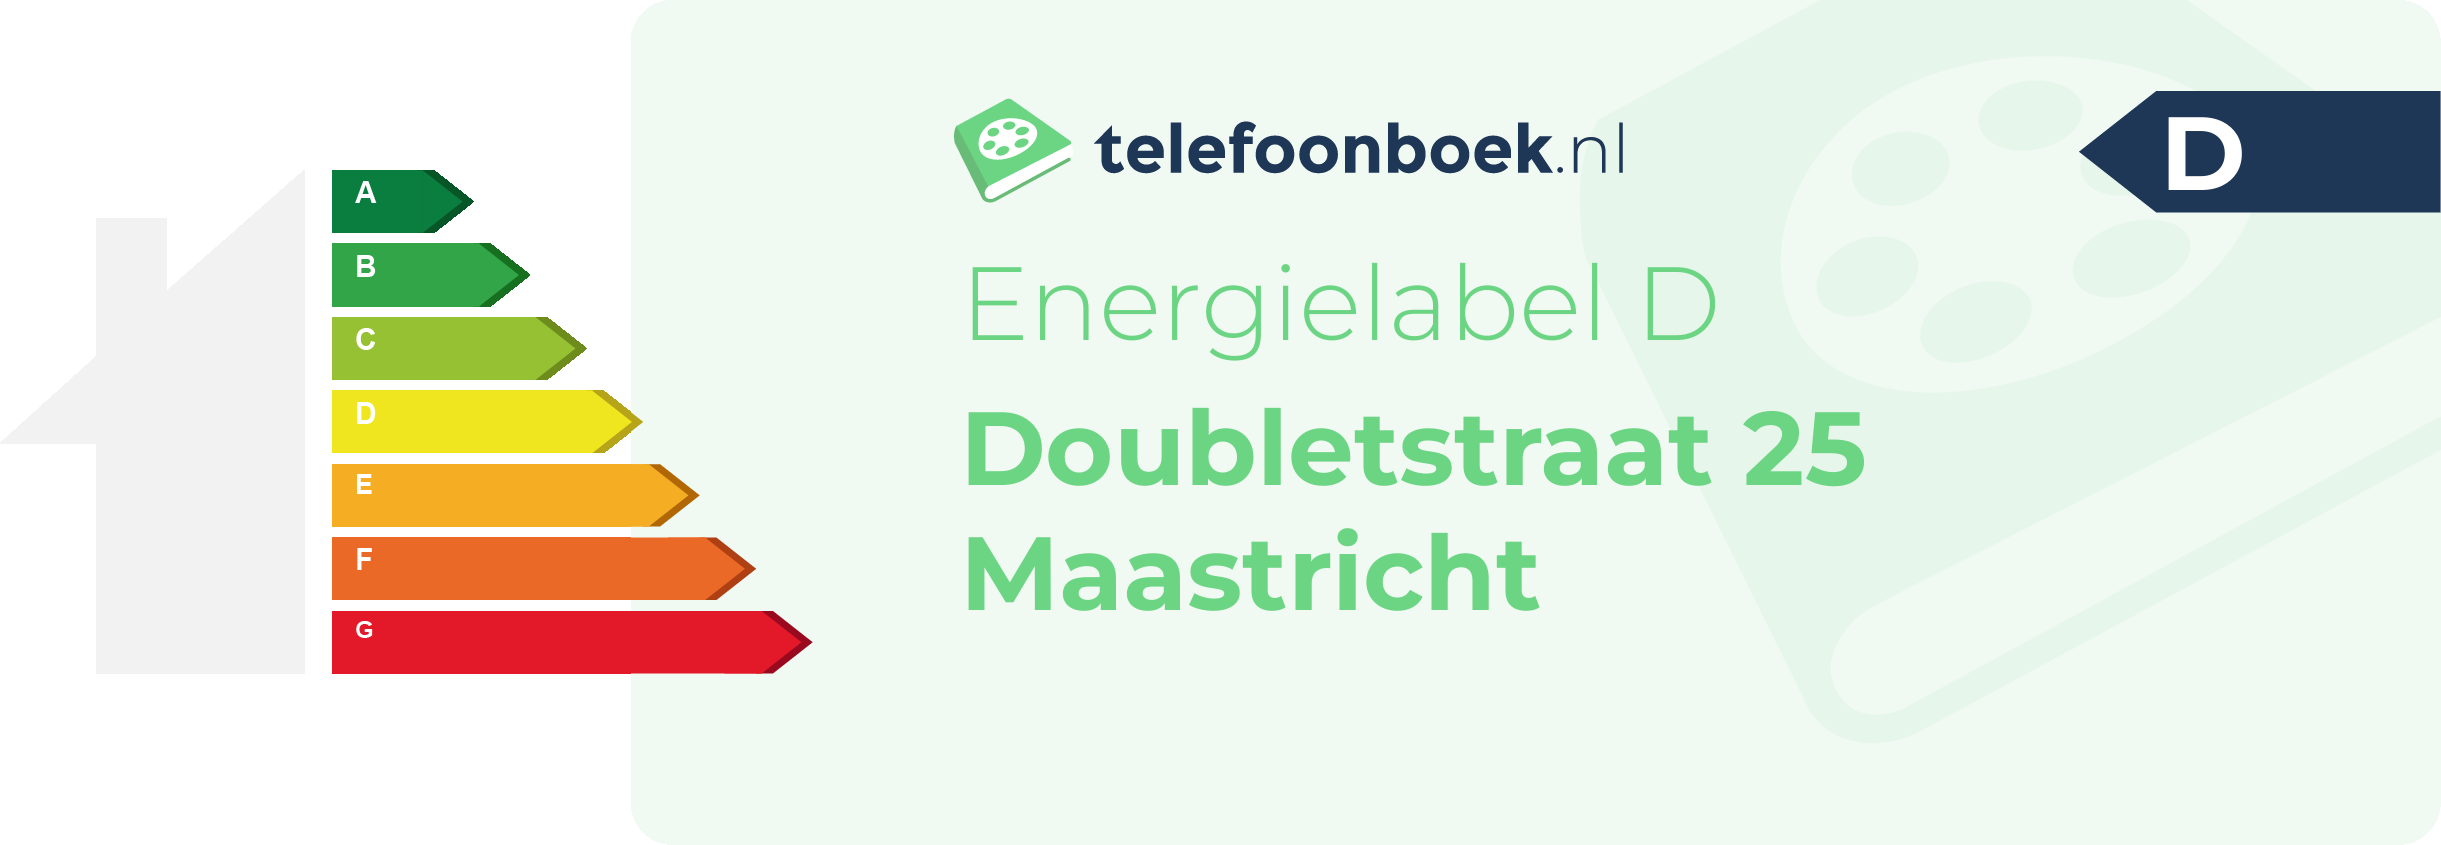 Energielabel Doubletstraat 25 Maastricht